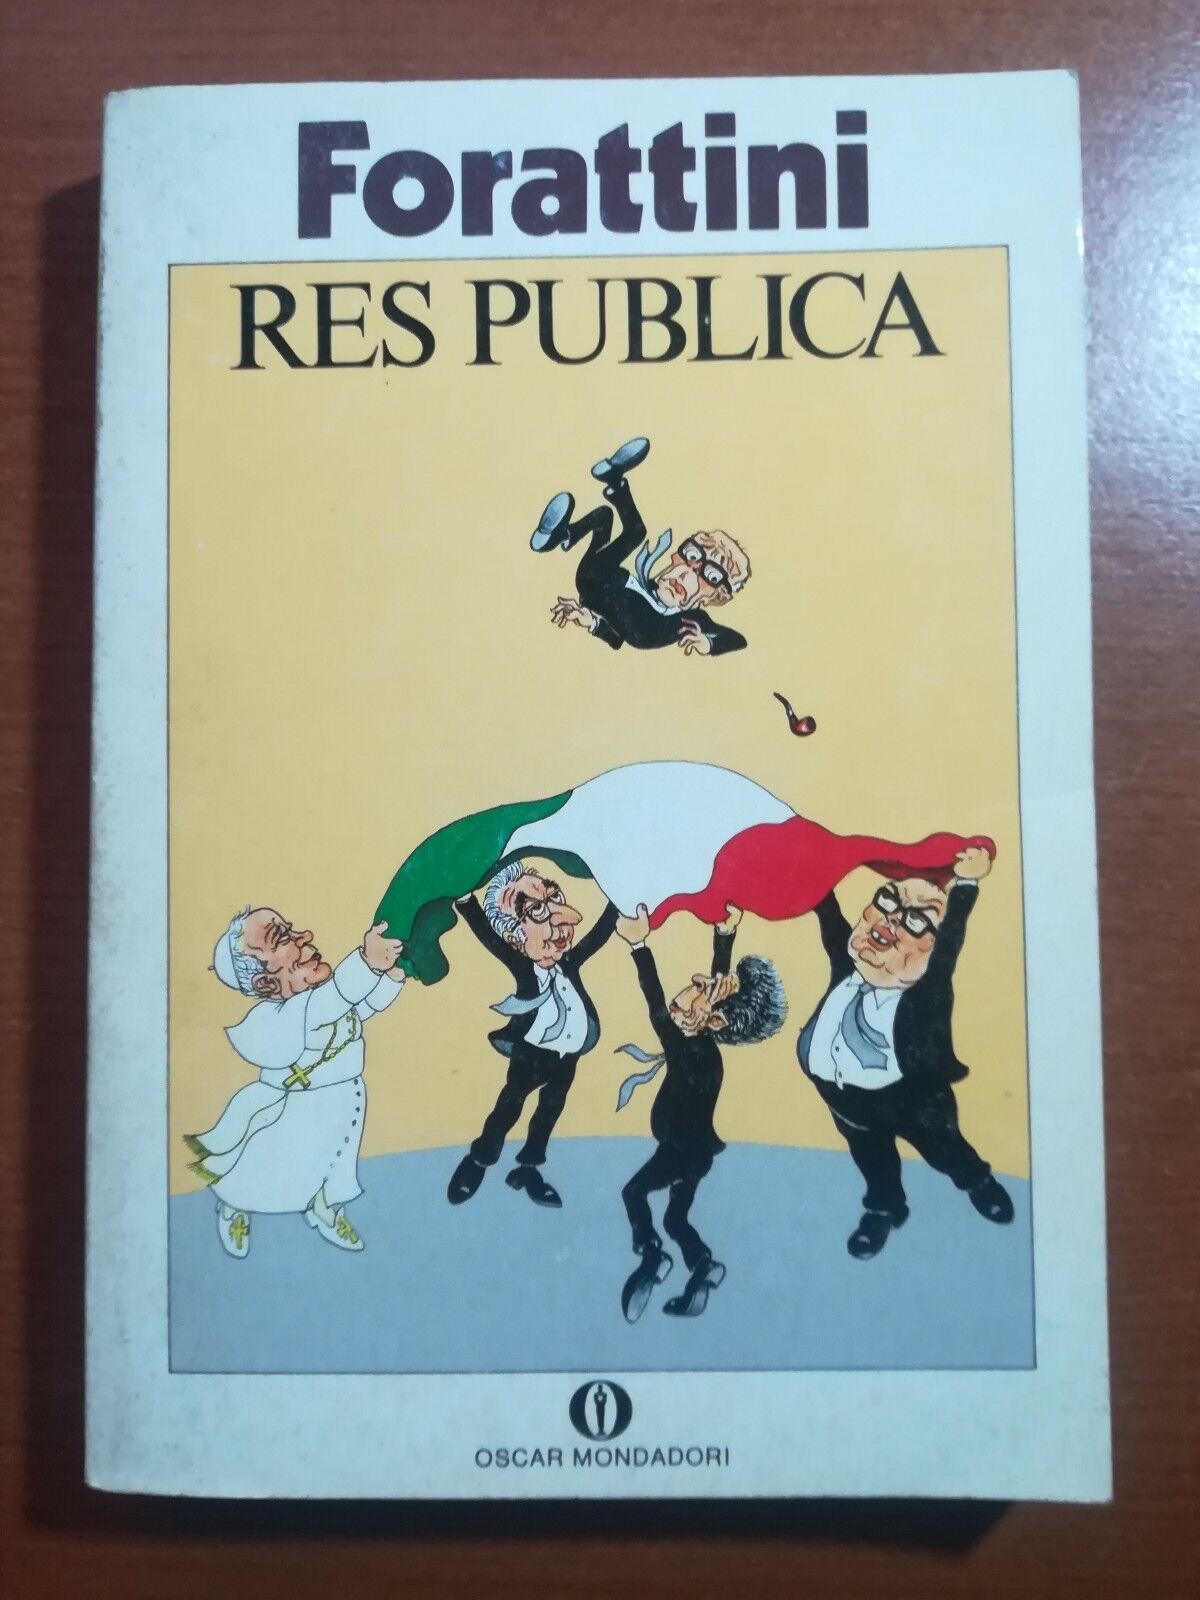 Res publica - Forattini - Mondadori - 1986 - M